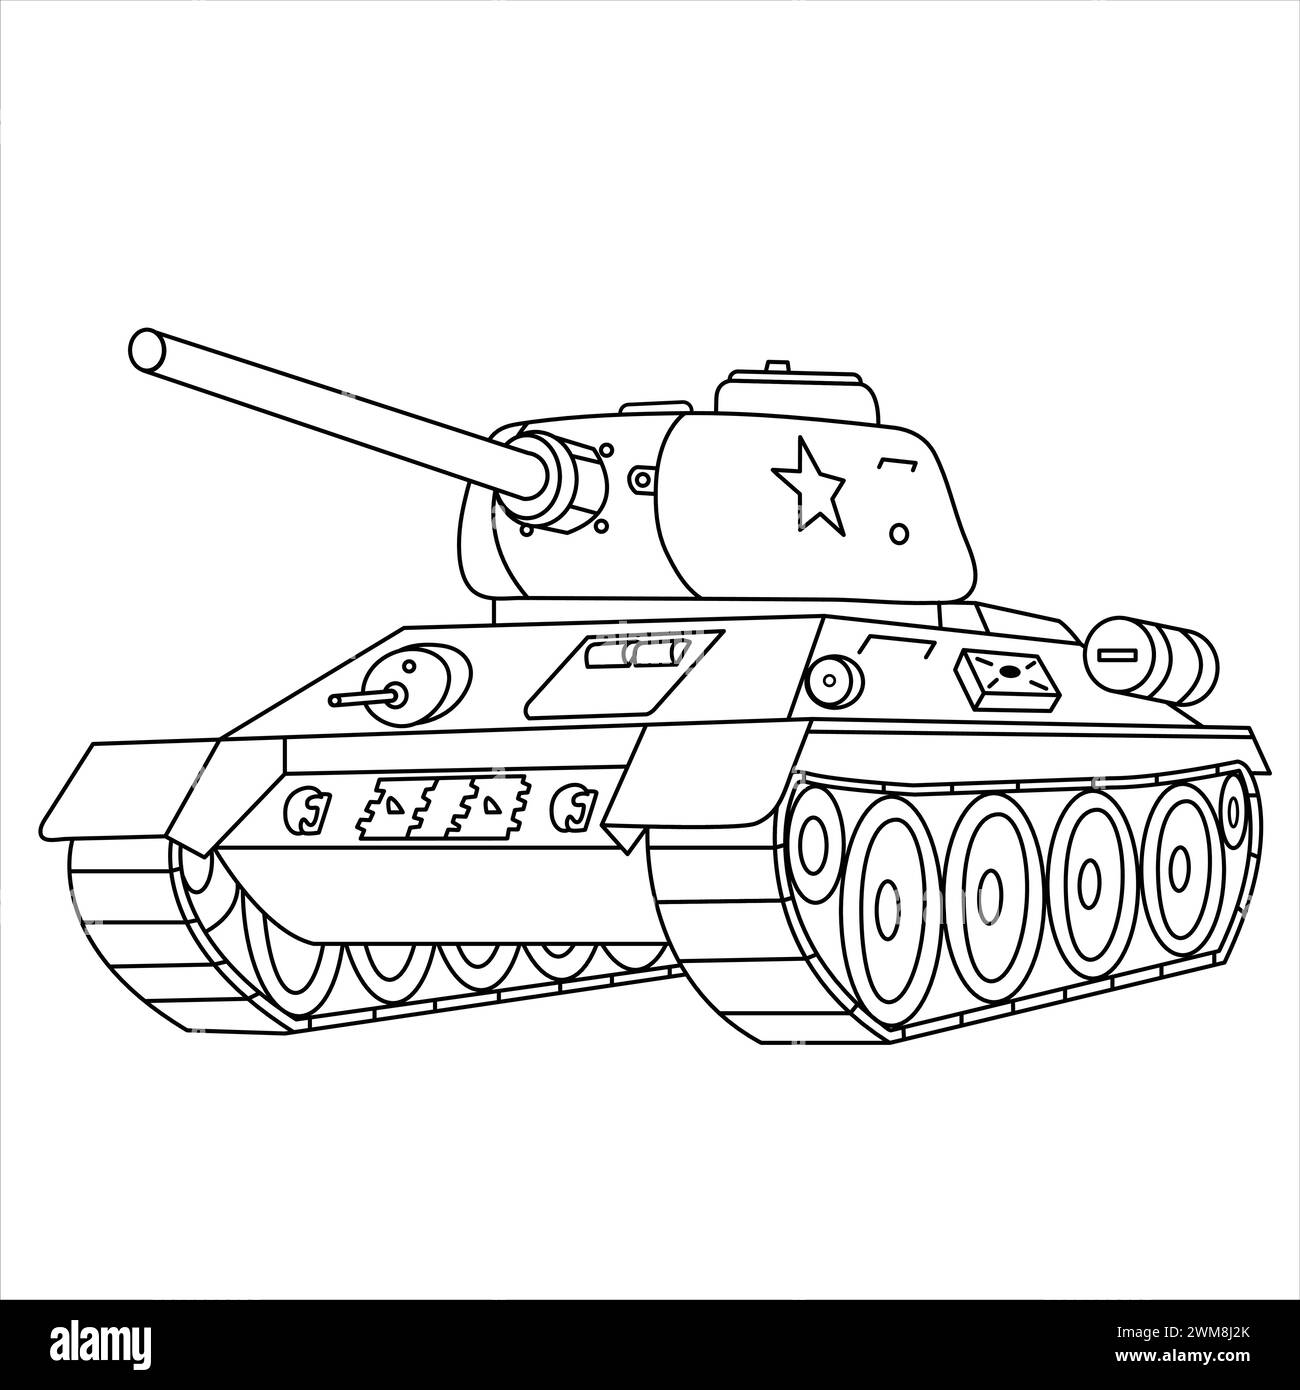 Carro armato sovietico T-34. Libro da colorare per veicoli militari per bambini e adulti. Carro armato da battaglia russo della seconda guerra mondiale isolato su sfondo bianco. Disegno serbatoio Illustrazione Vettoriale